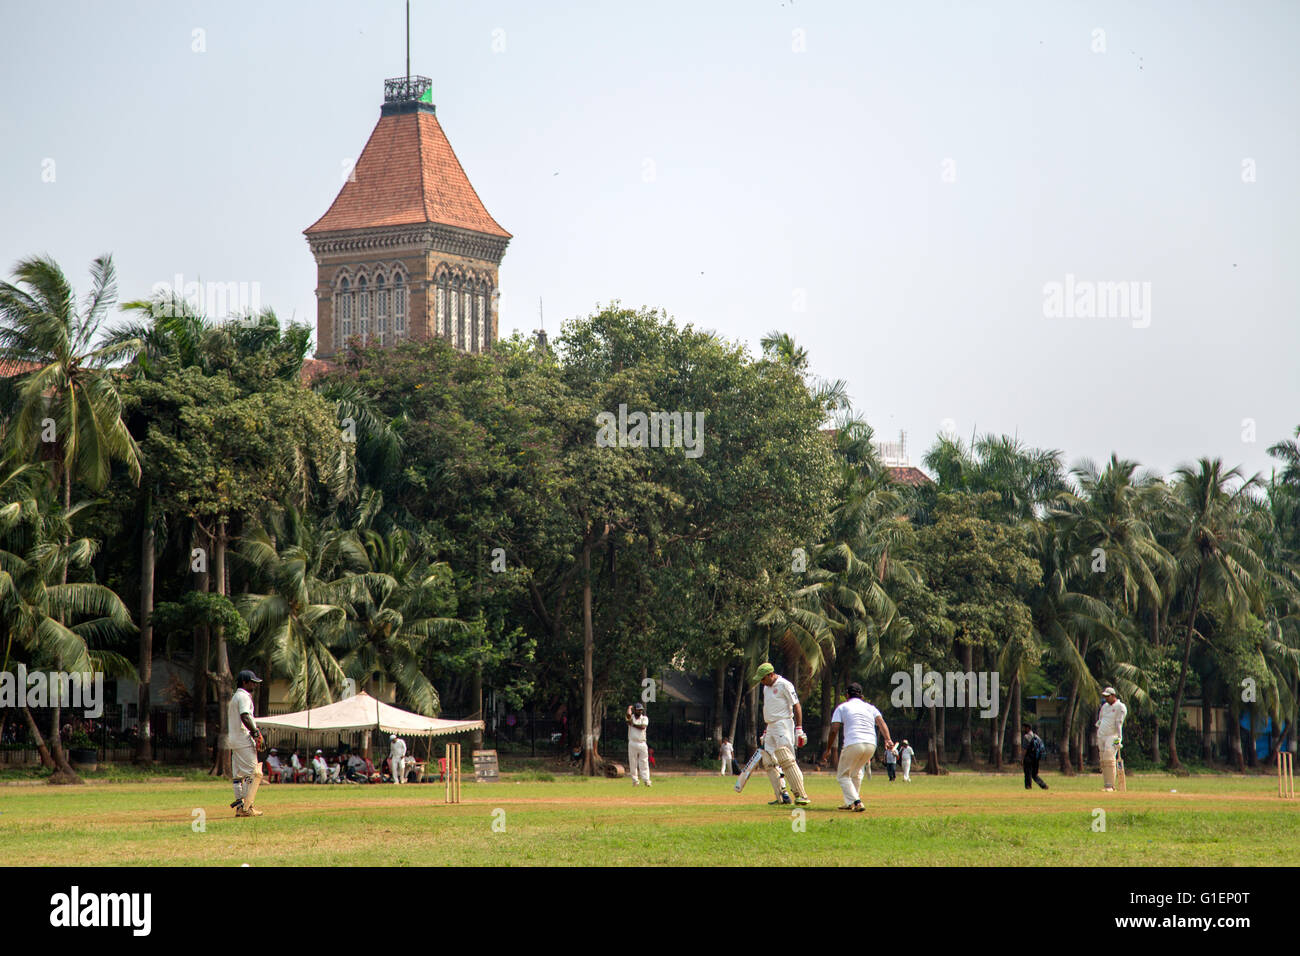 MUMBAI, India - Octubre 10, 2015: la gente jugar cricket en el parque central en Mumbai, India. El críquet es el deporte más popular Foto de stock